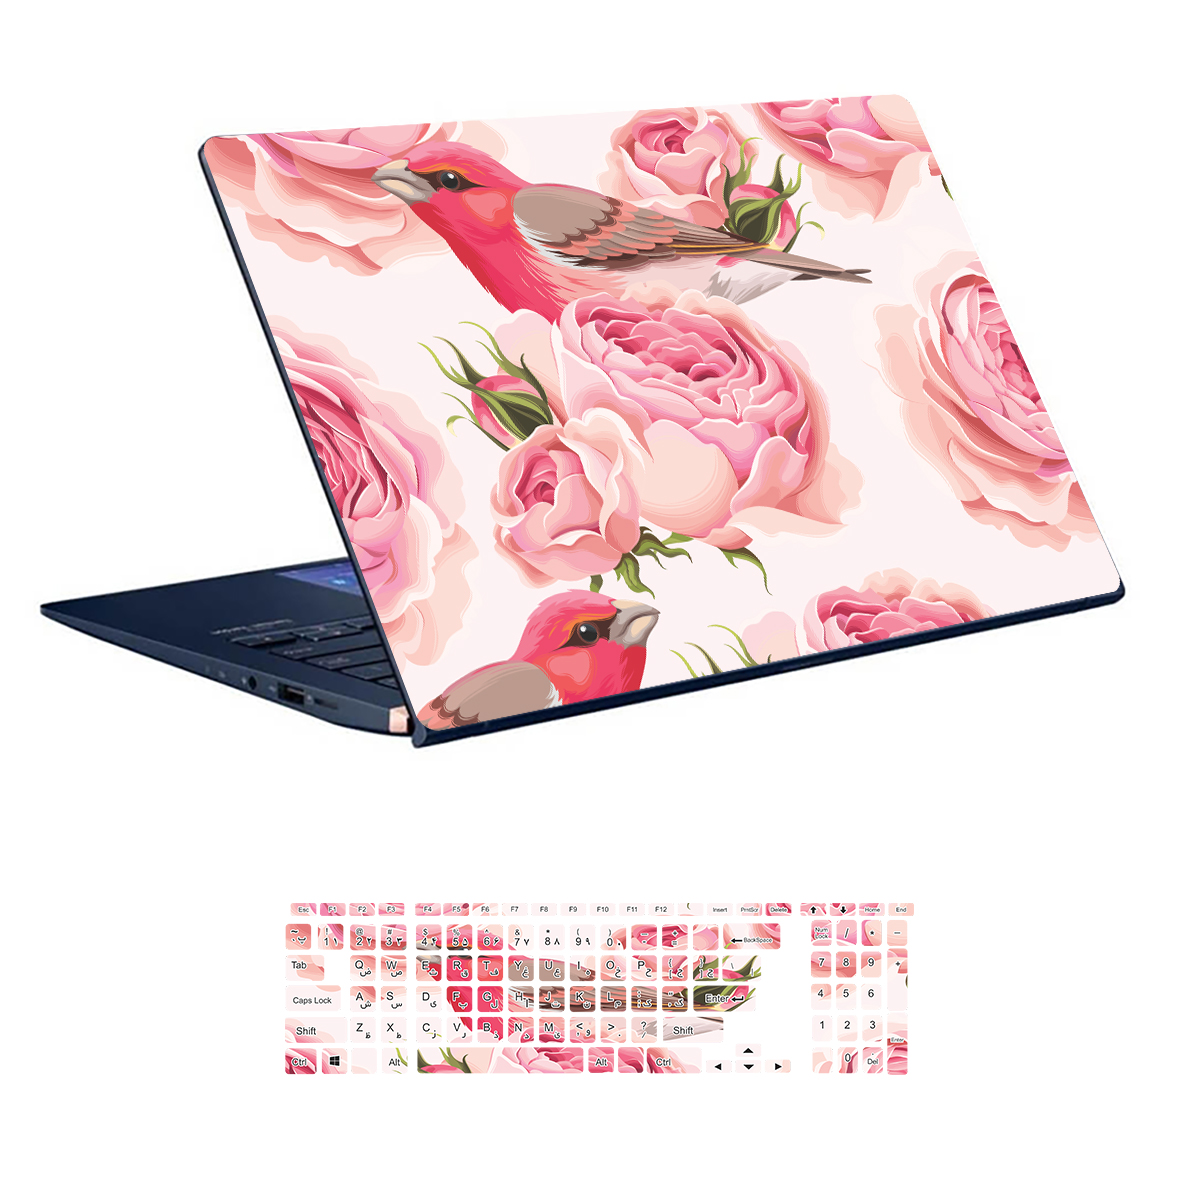 Flower design laptop skin code 06 with keyboard sticker